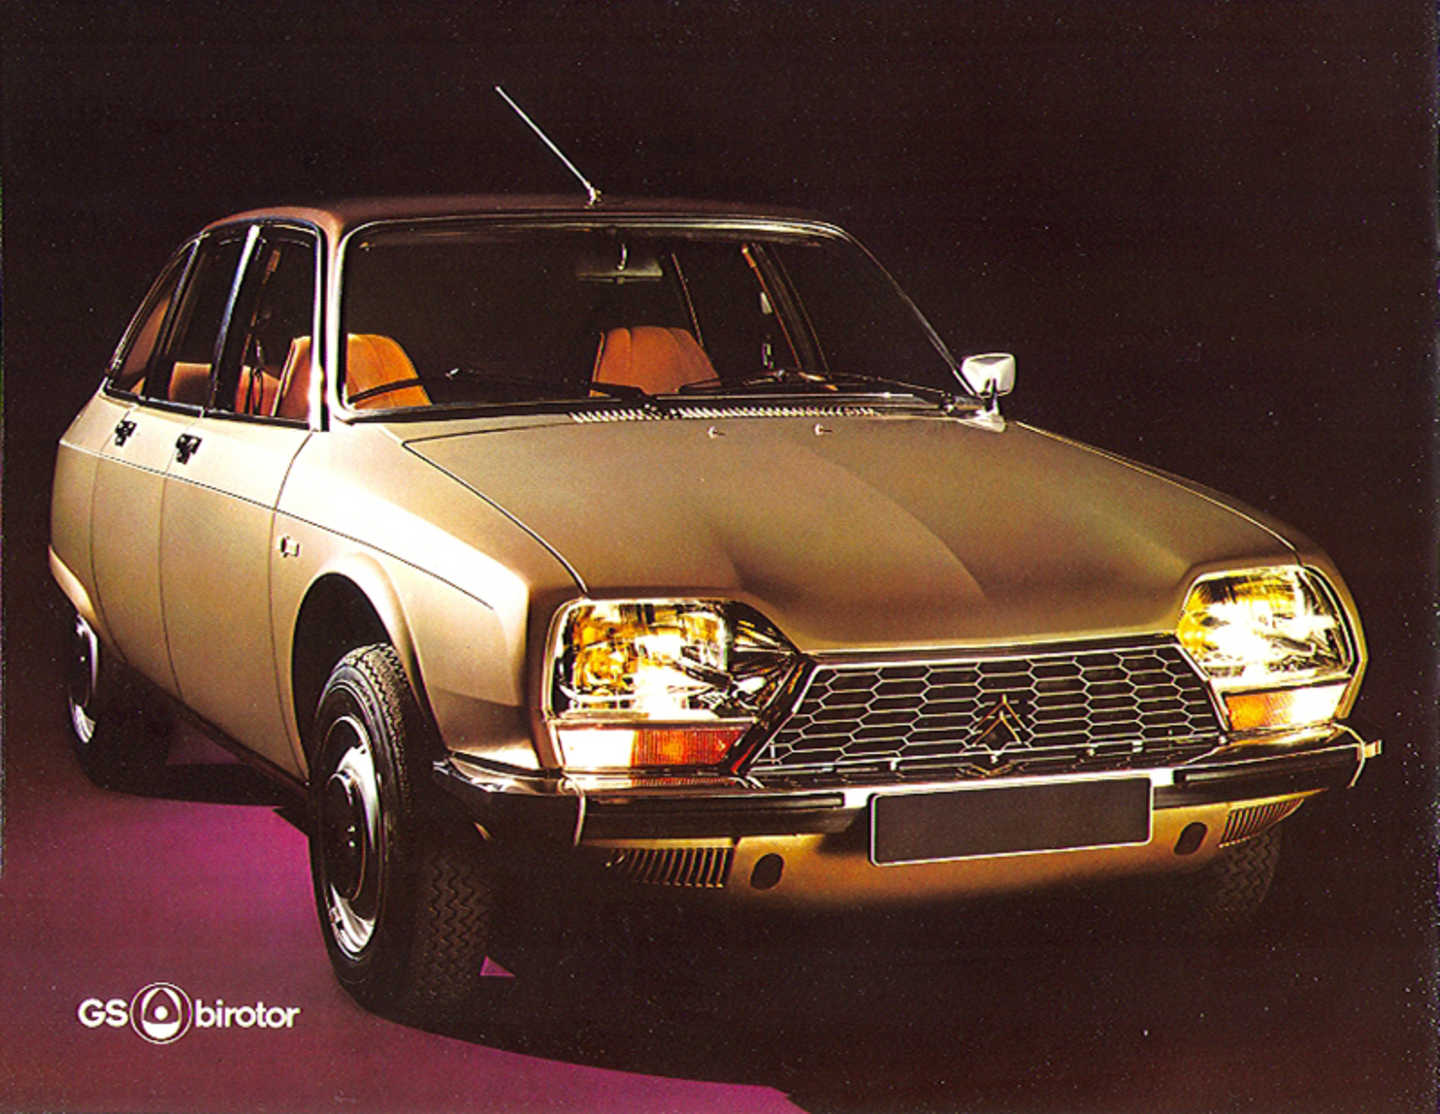 La GS Birotor, comme la M35, est un gouffre financier pour Citroën